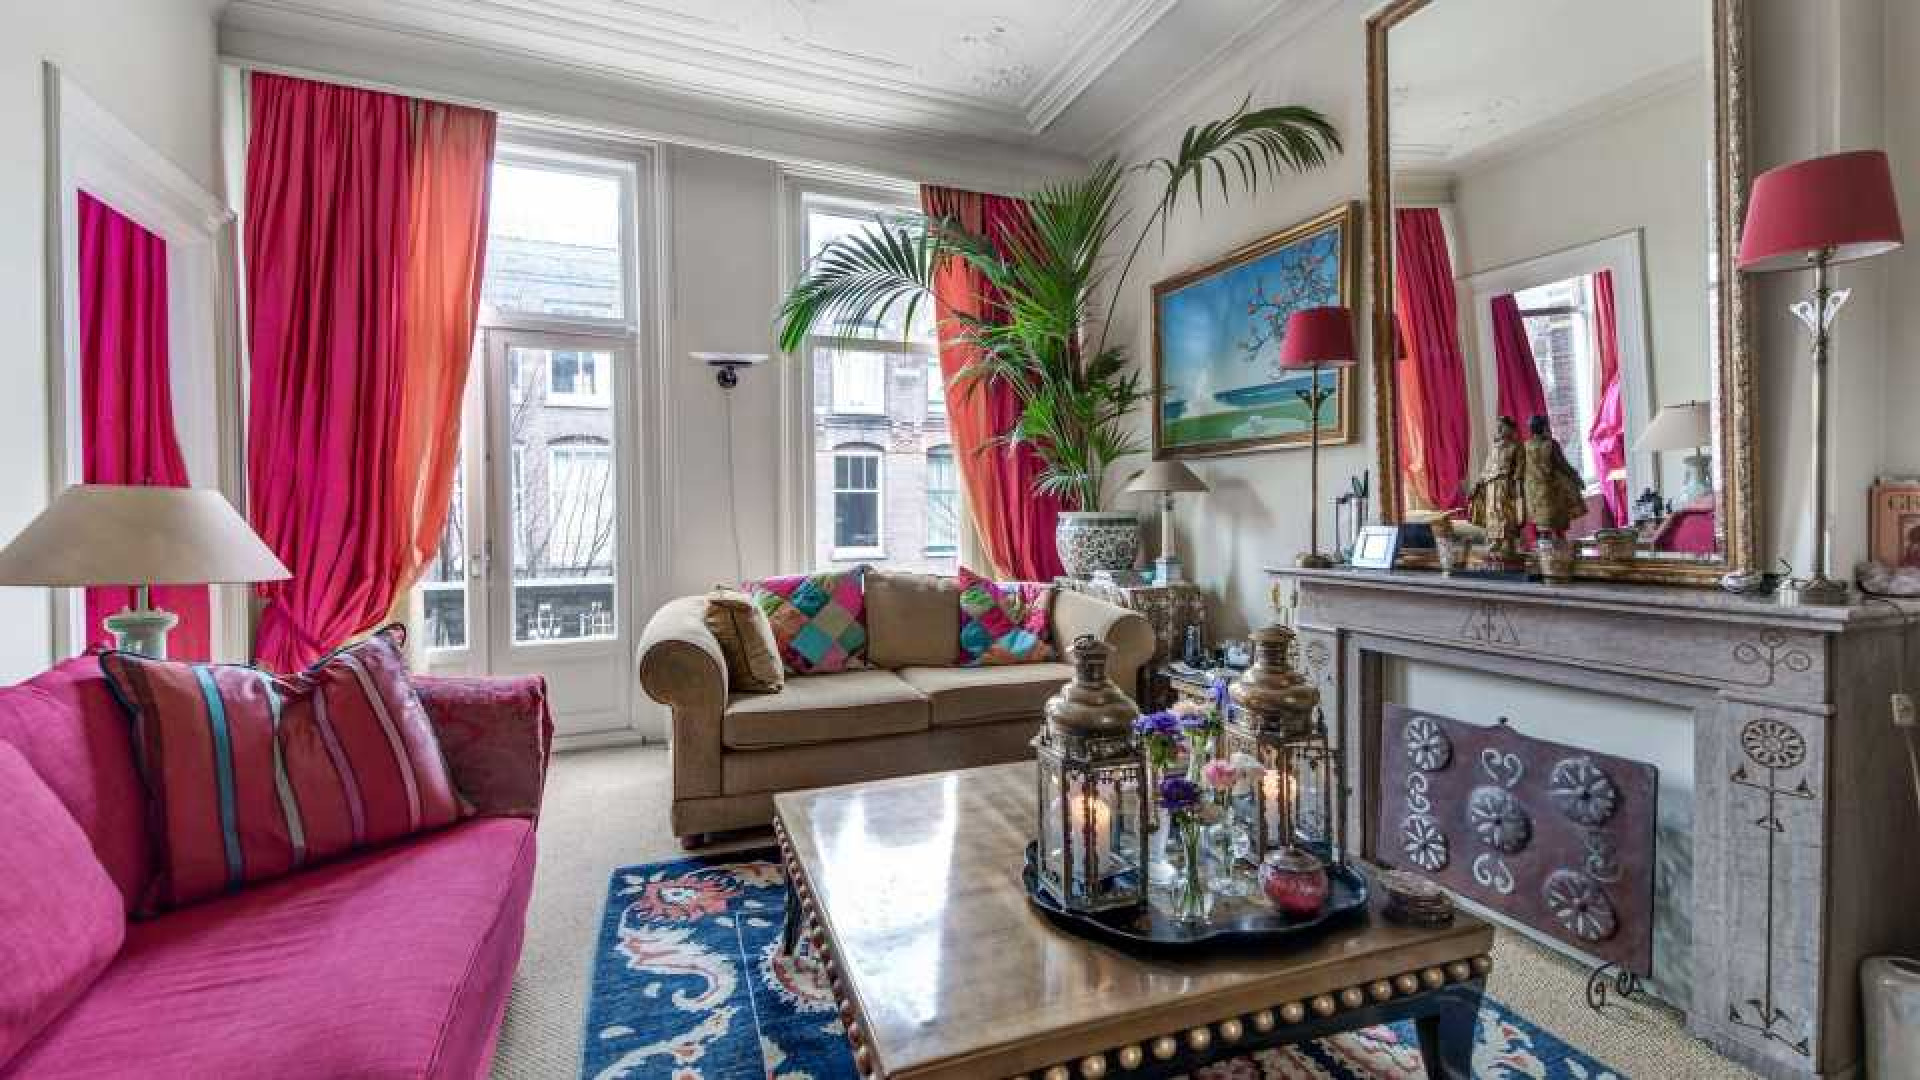 Mode koningin Sheila de Vries verkoopt haar driedubbele bovenhuis in Amsterdam Zuid met vette winst. Zie foto's 2